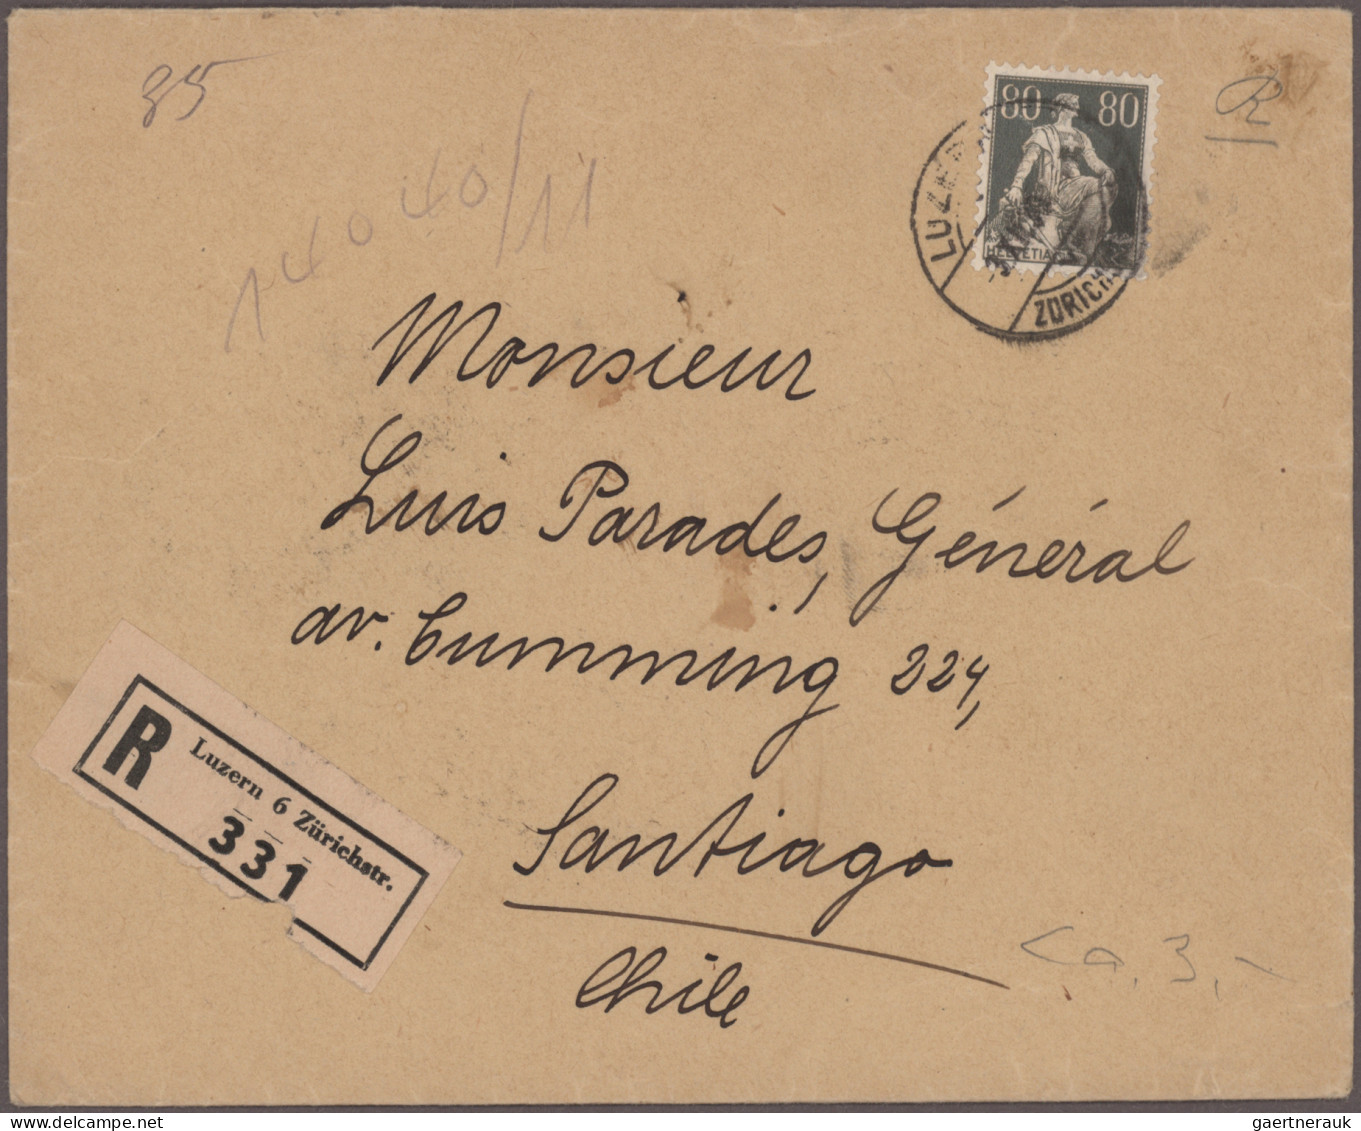 Ireland - post marks: 1870/1940er Jahre ca.: Rund 90 Briefe, Postkarten, Ganzsac